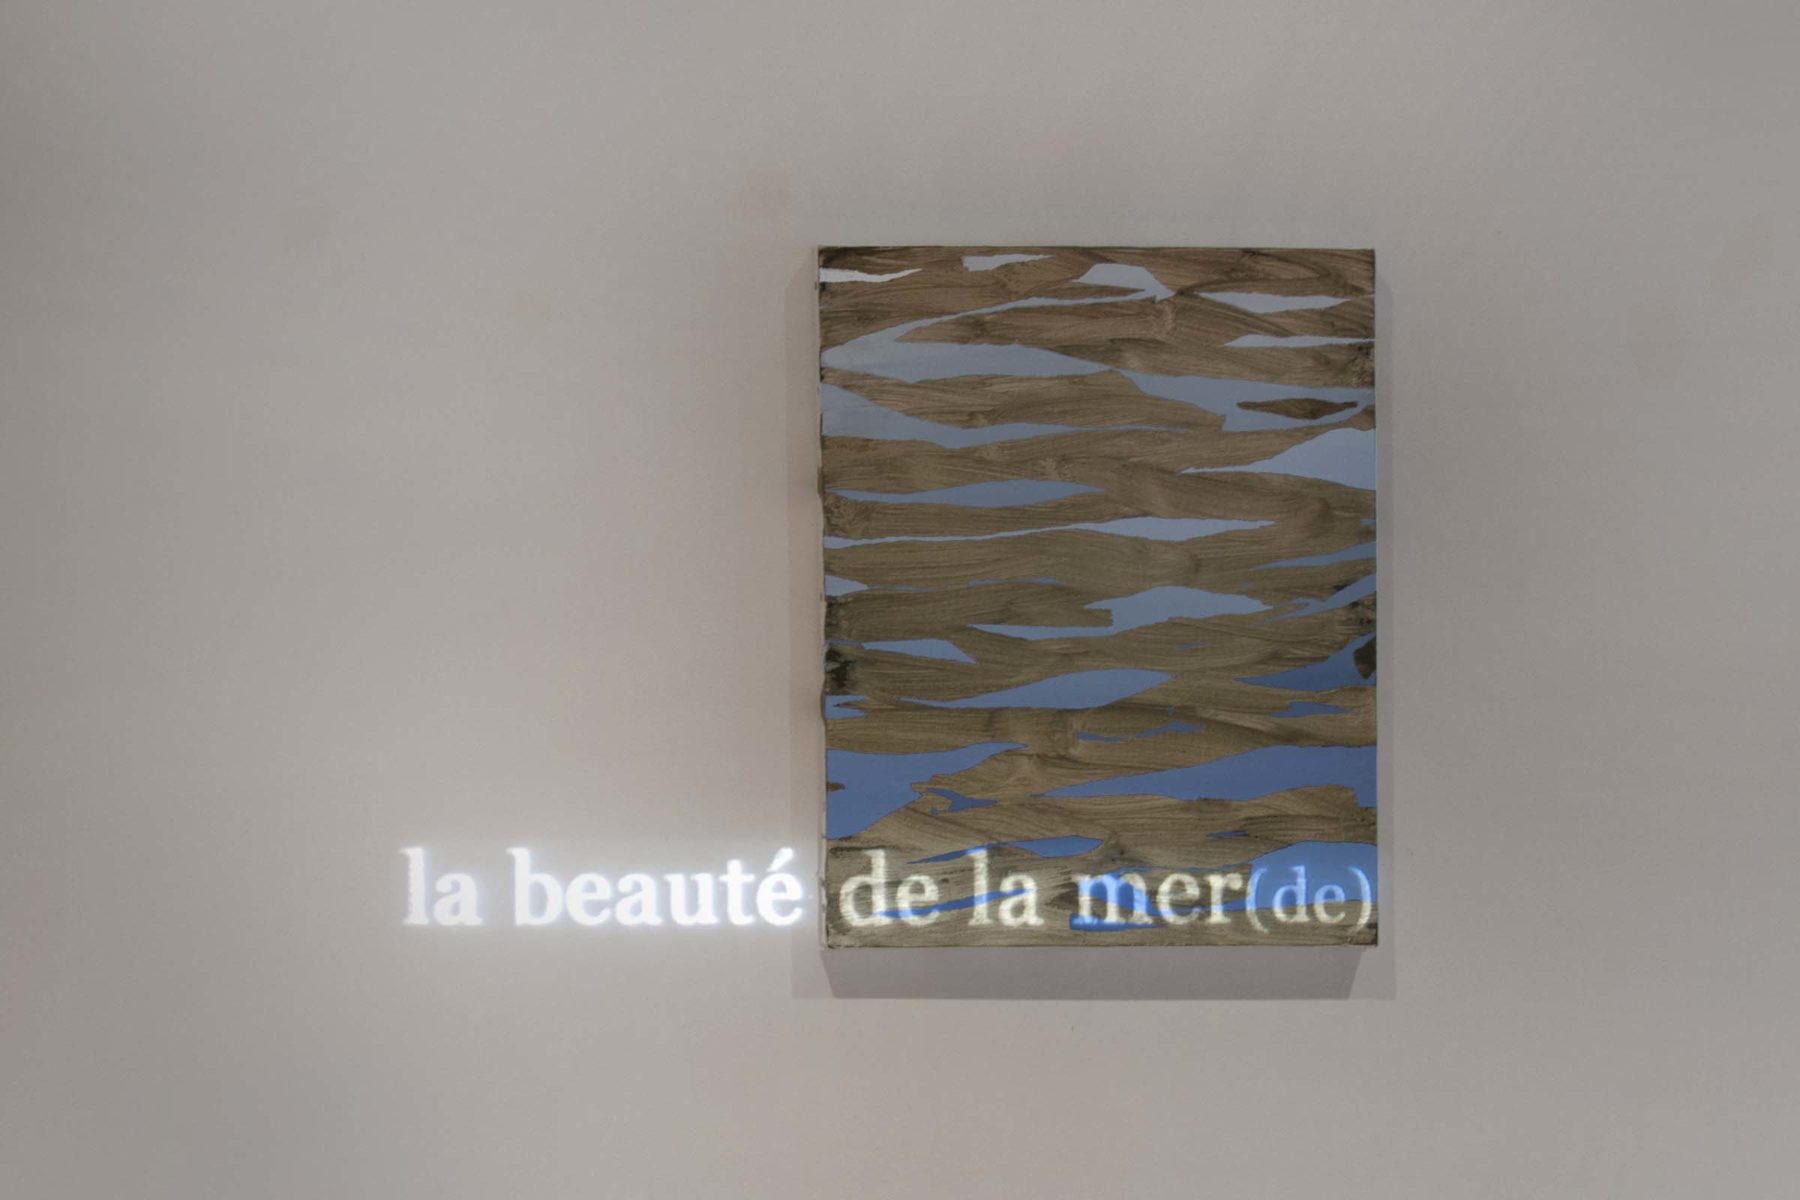 Linda Carrara, La fatigue de ne pas finir, 2017, installation view, Musumeci Contemporary, Brussels